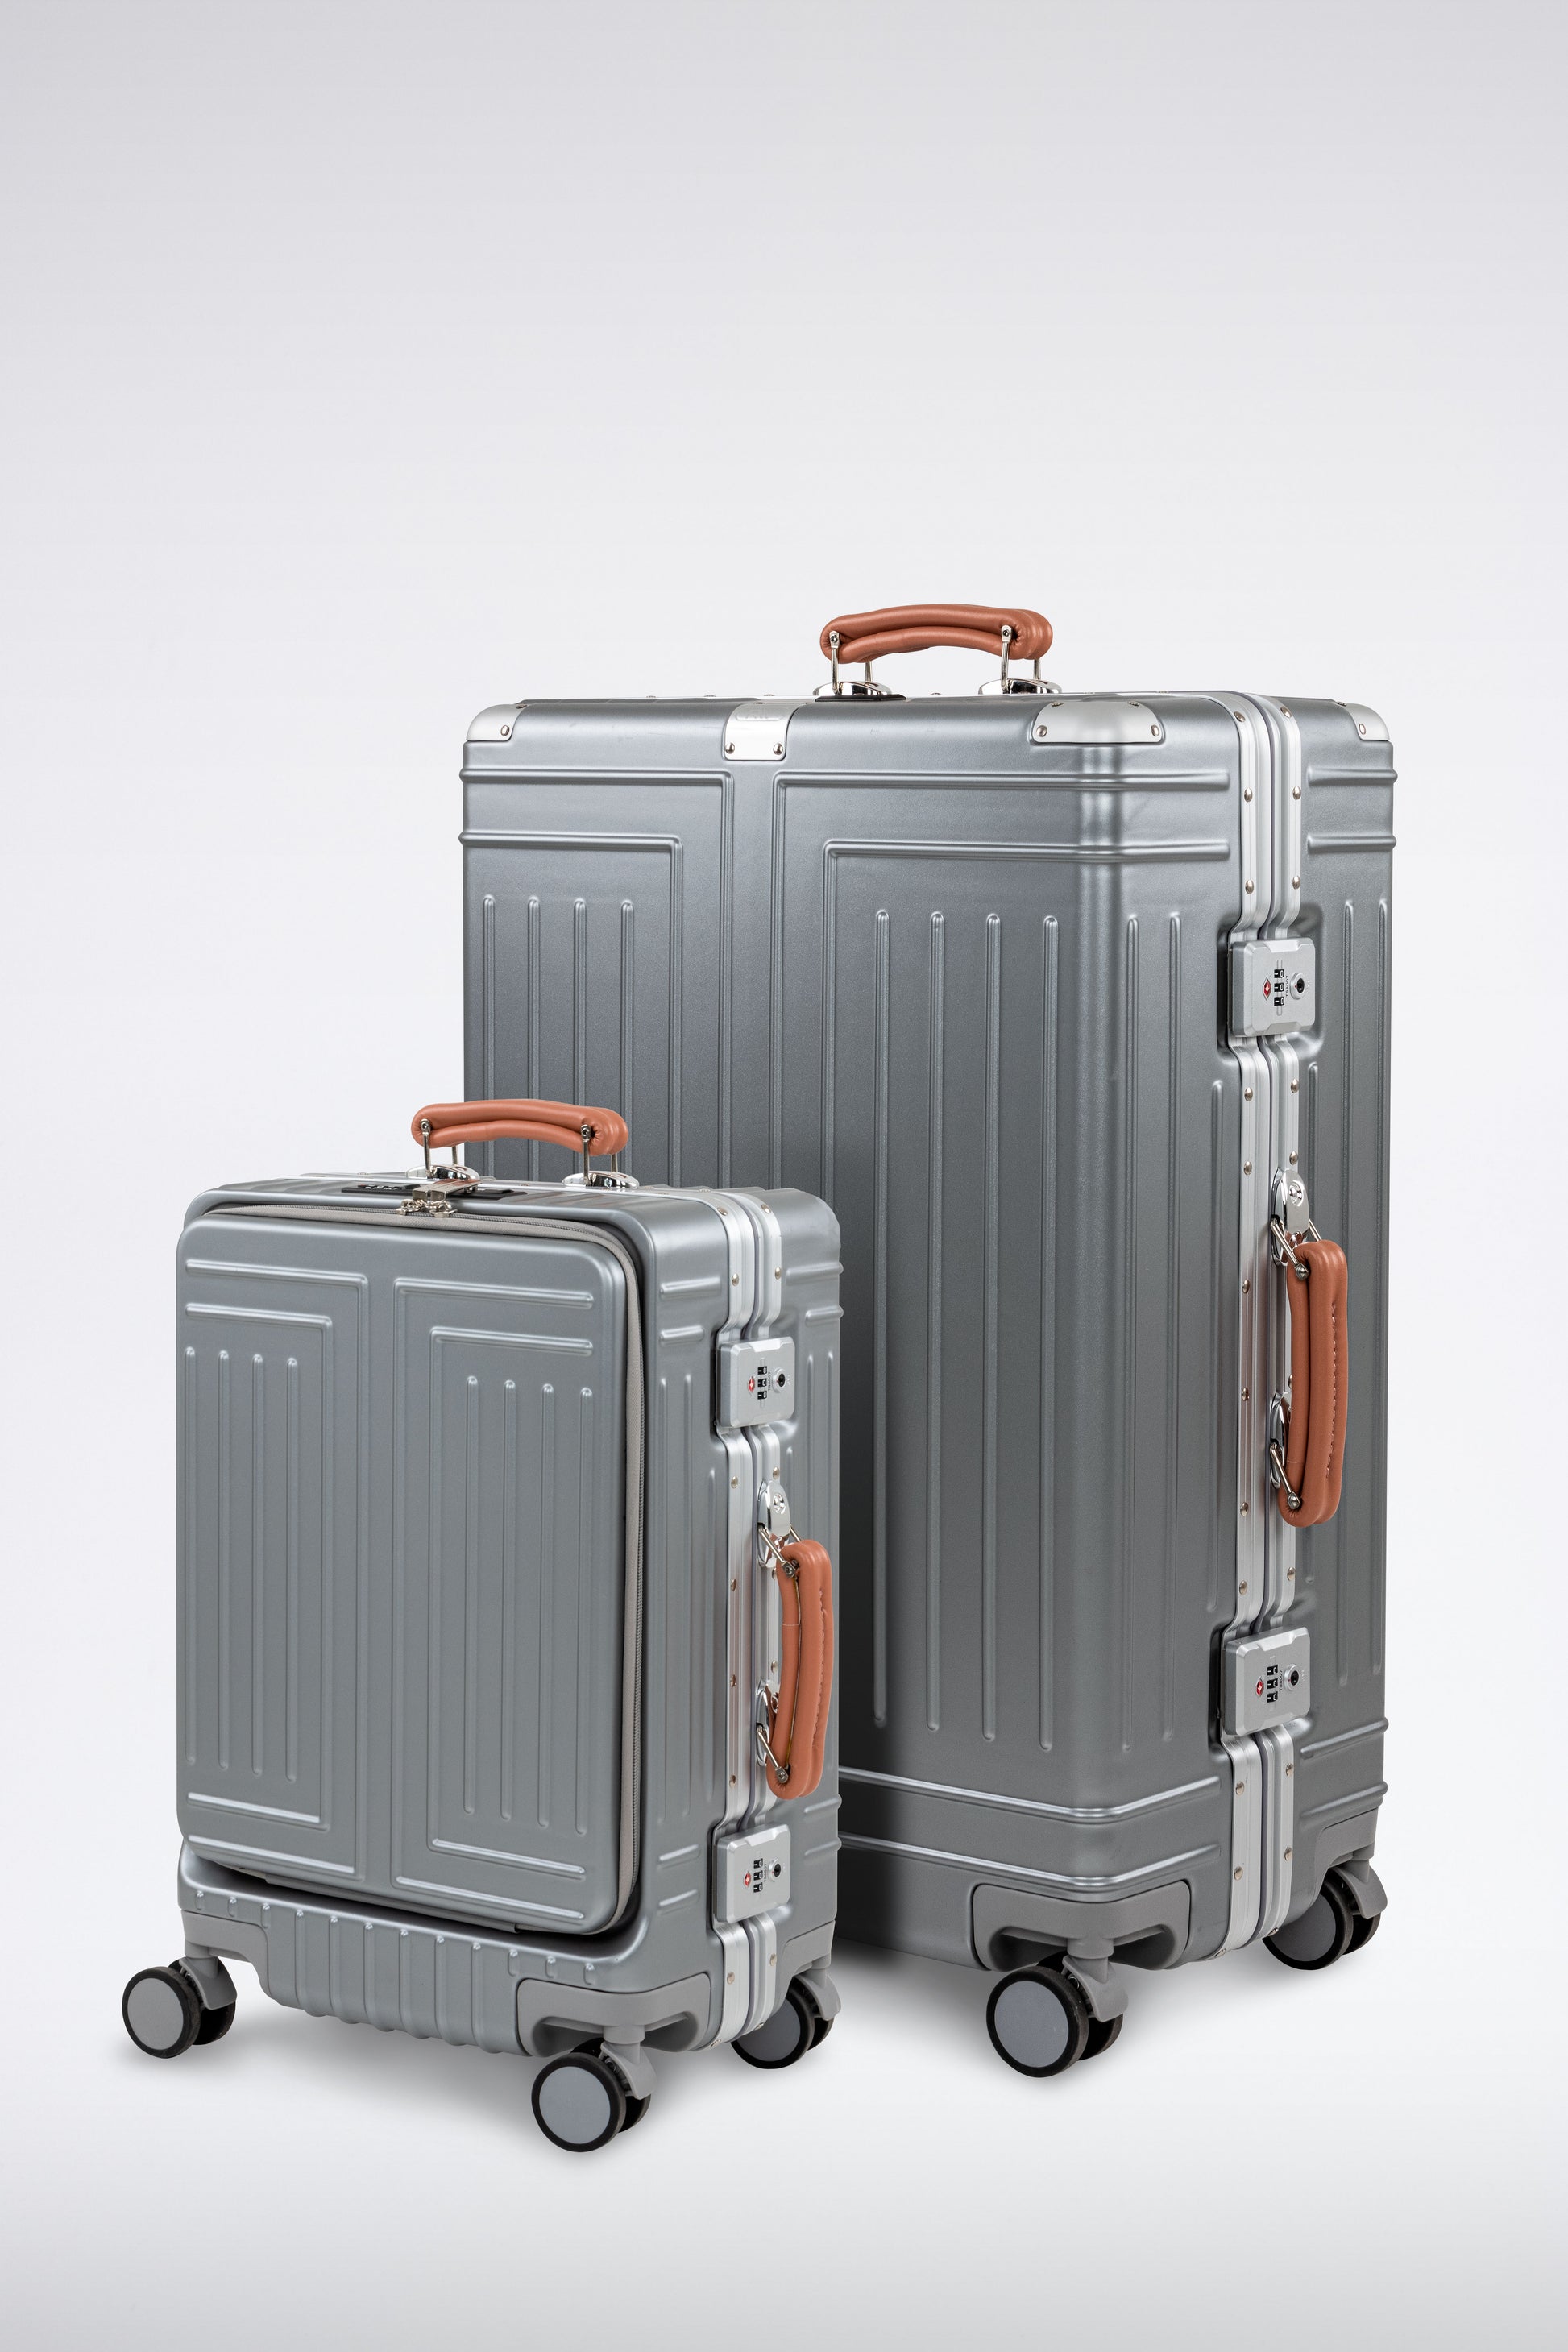 5 candados para equipaje con los que tu maleta estará muy segura